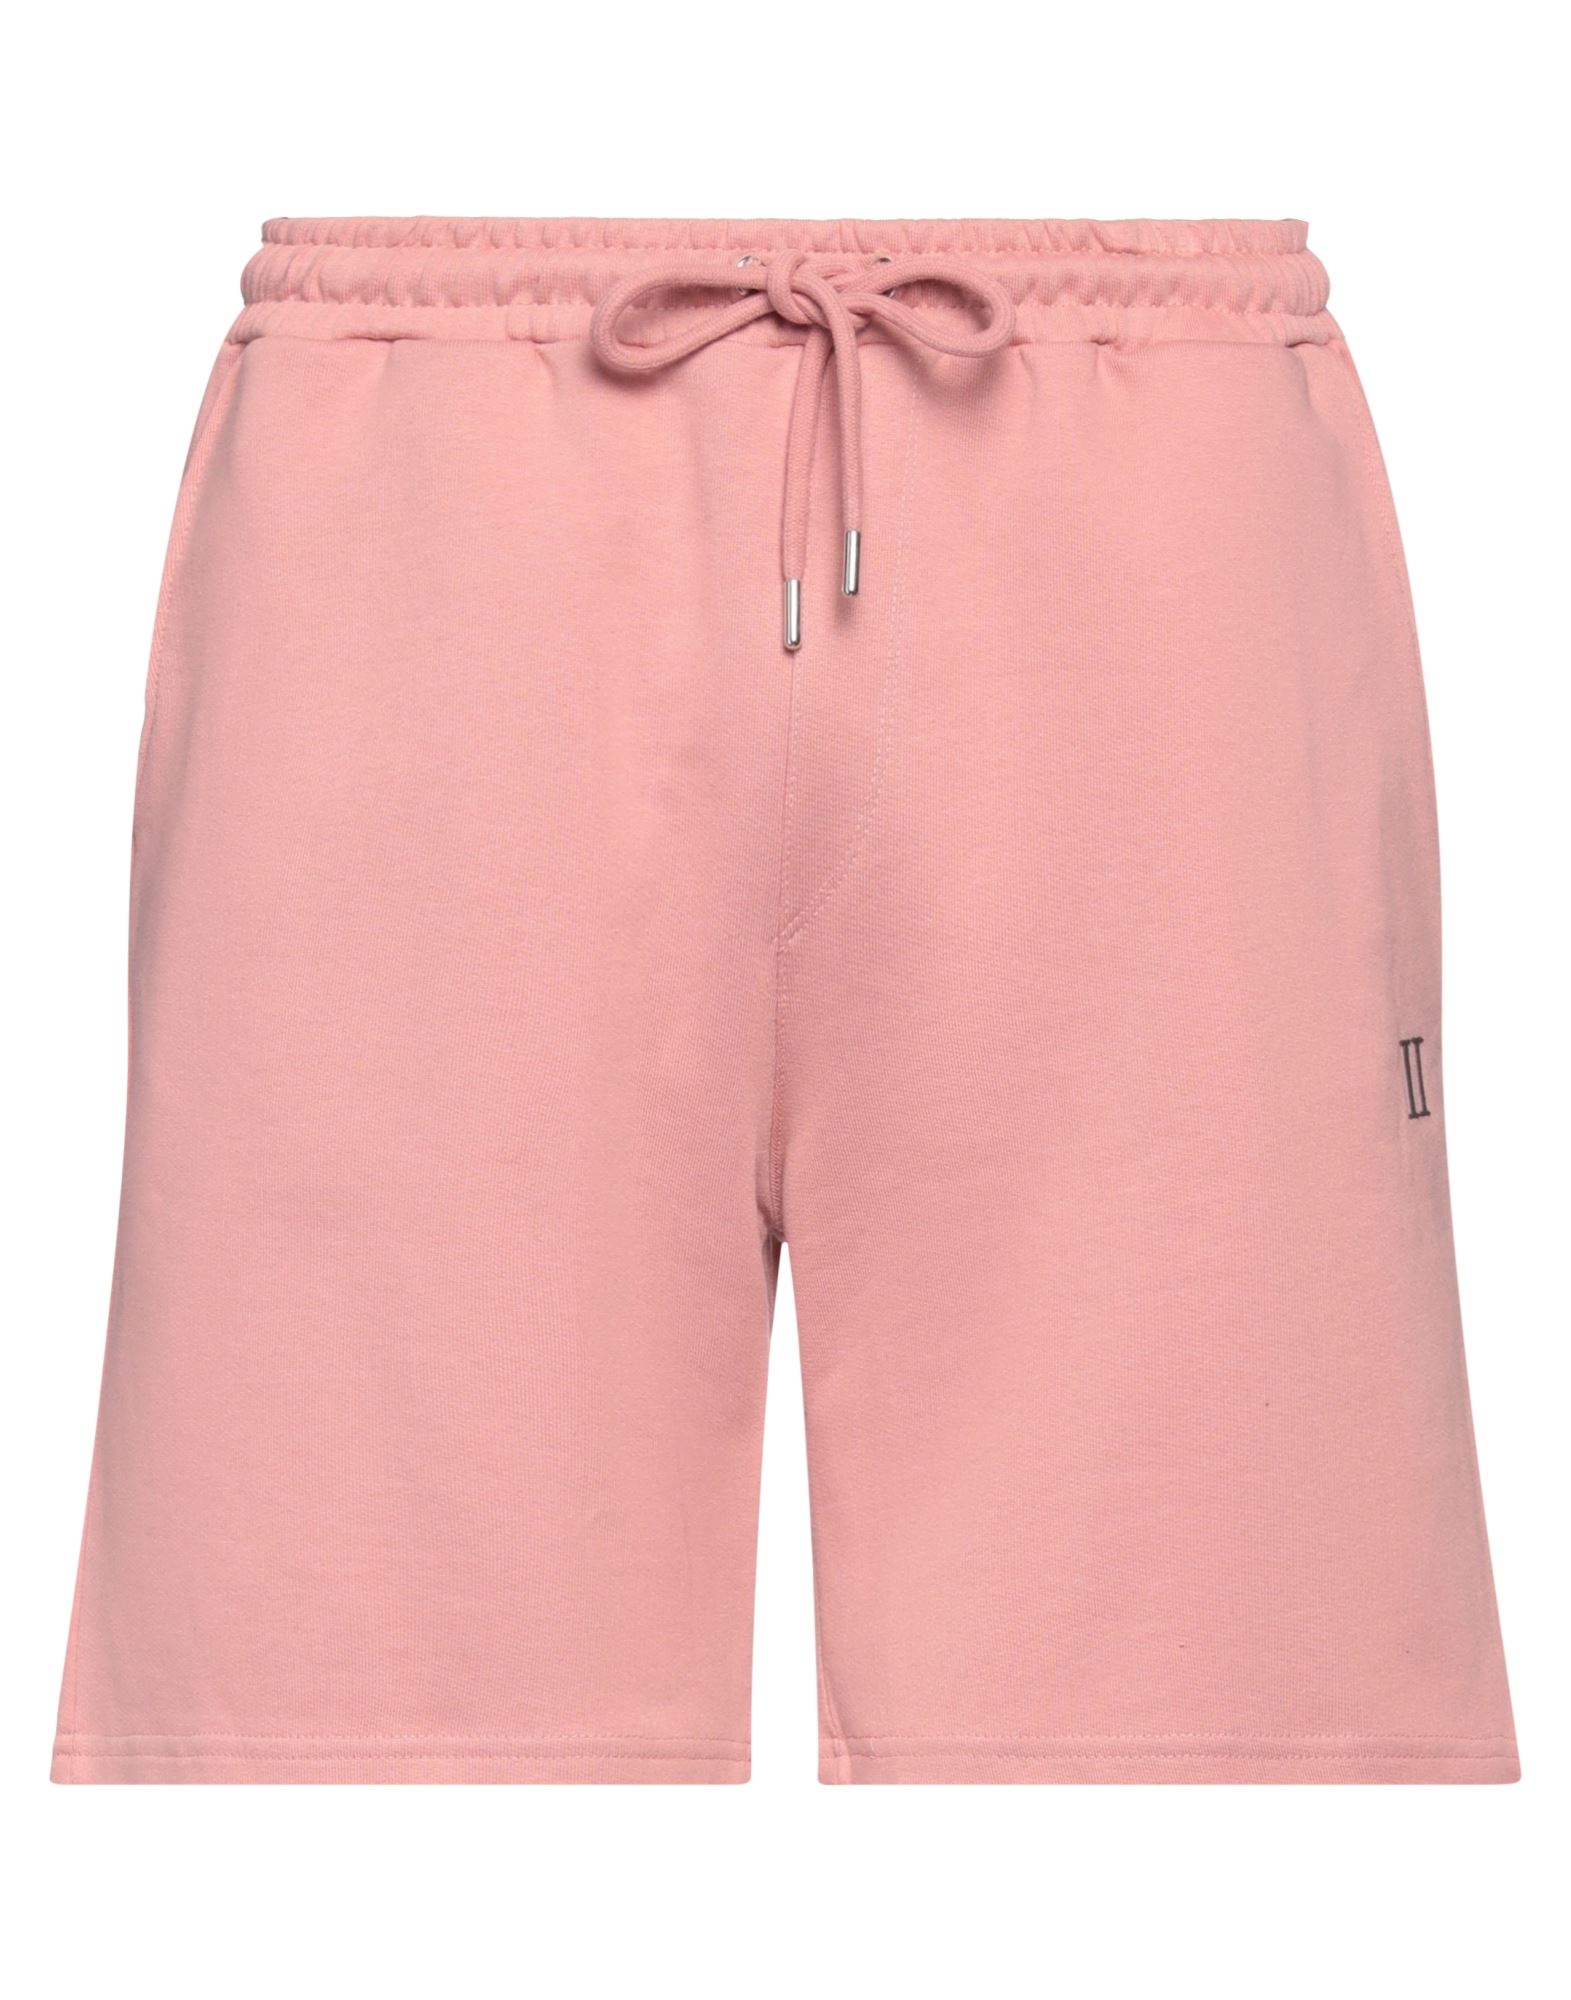 Les Deux Man Shorts & Bermuda Shorts Pastel Pink Size L Cotton